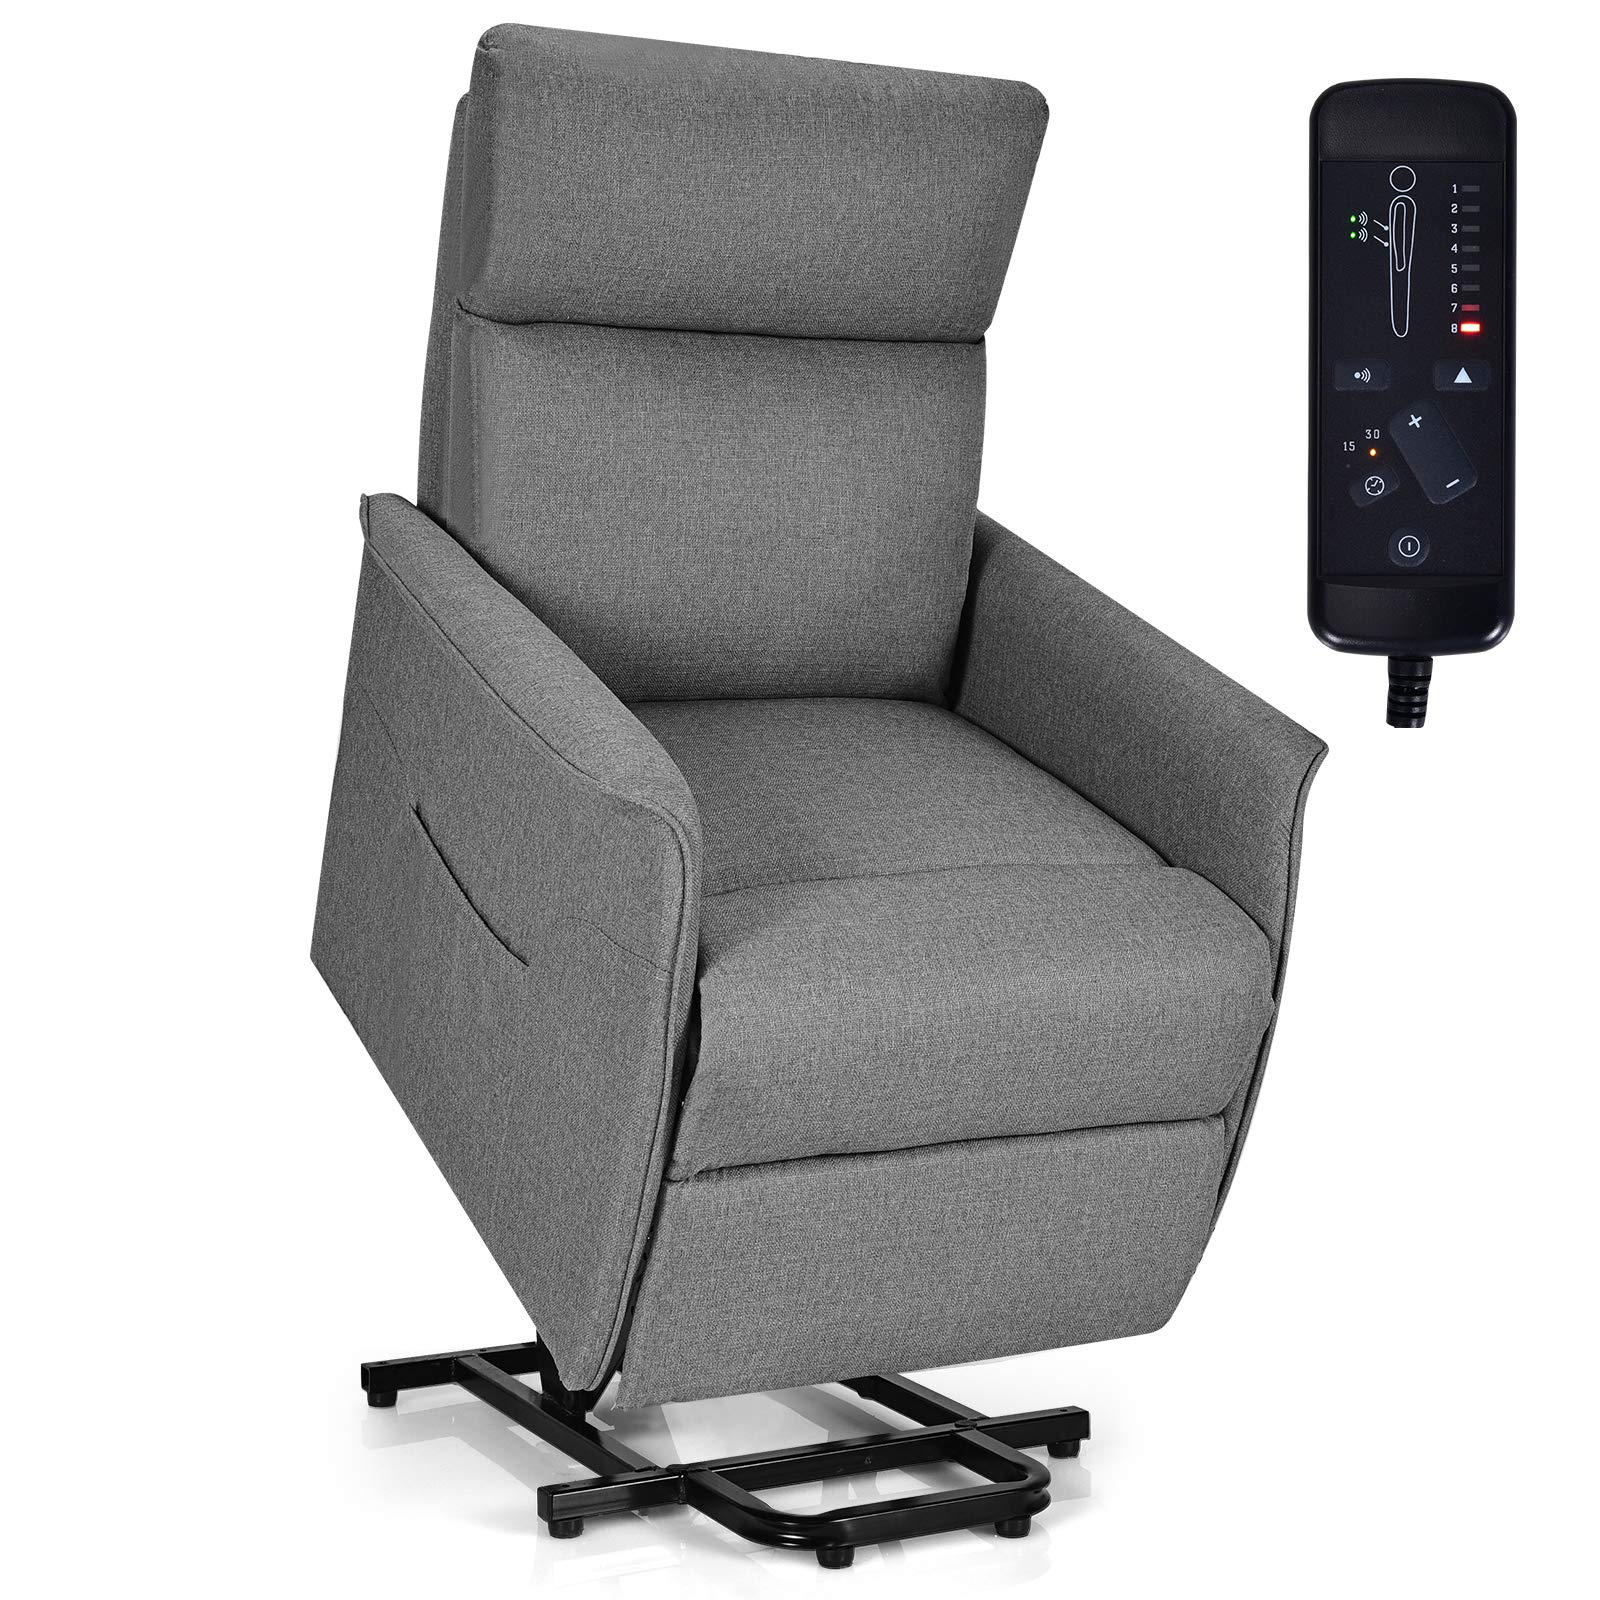 Giantex Power Lift Massage Recliner Chair for Elderly